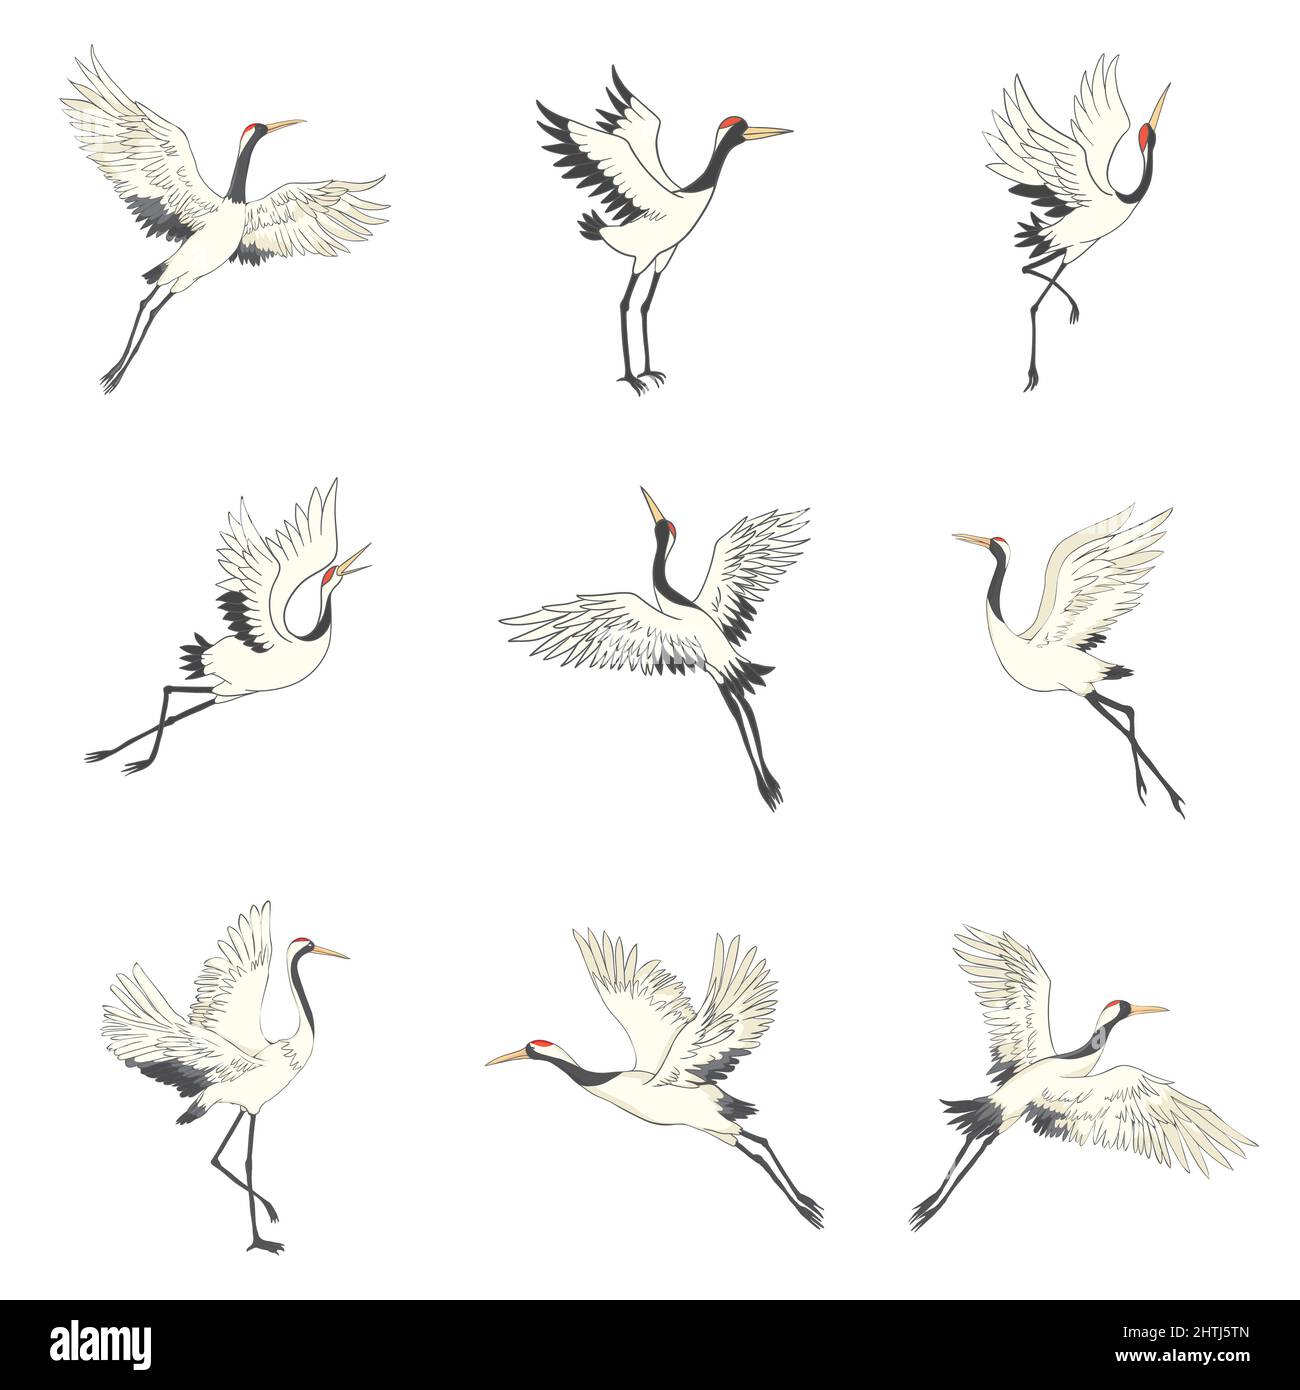 Ensemble de grues blanches dans différentes positions, collection d'oiseaux japonais dessinés à la main volant, debout, danse. Symbole de l'art asiatique traditionnel, Isola Illustration de Vecteur